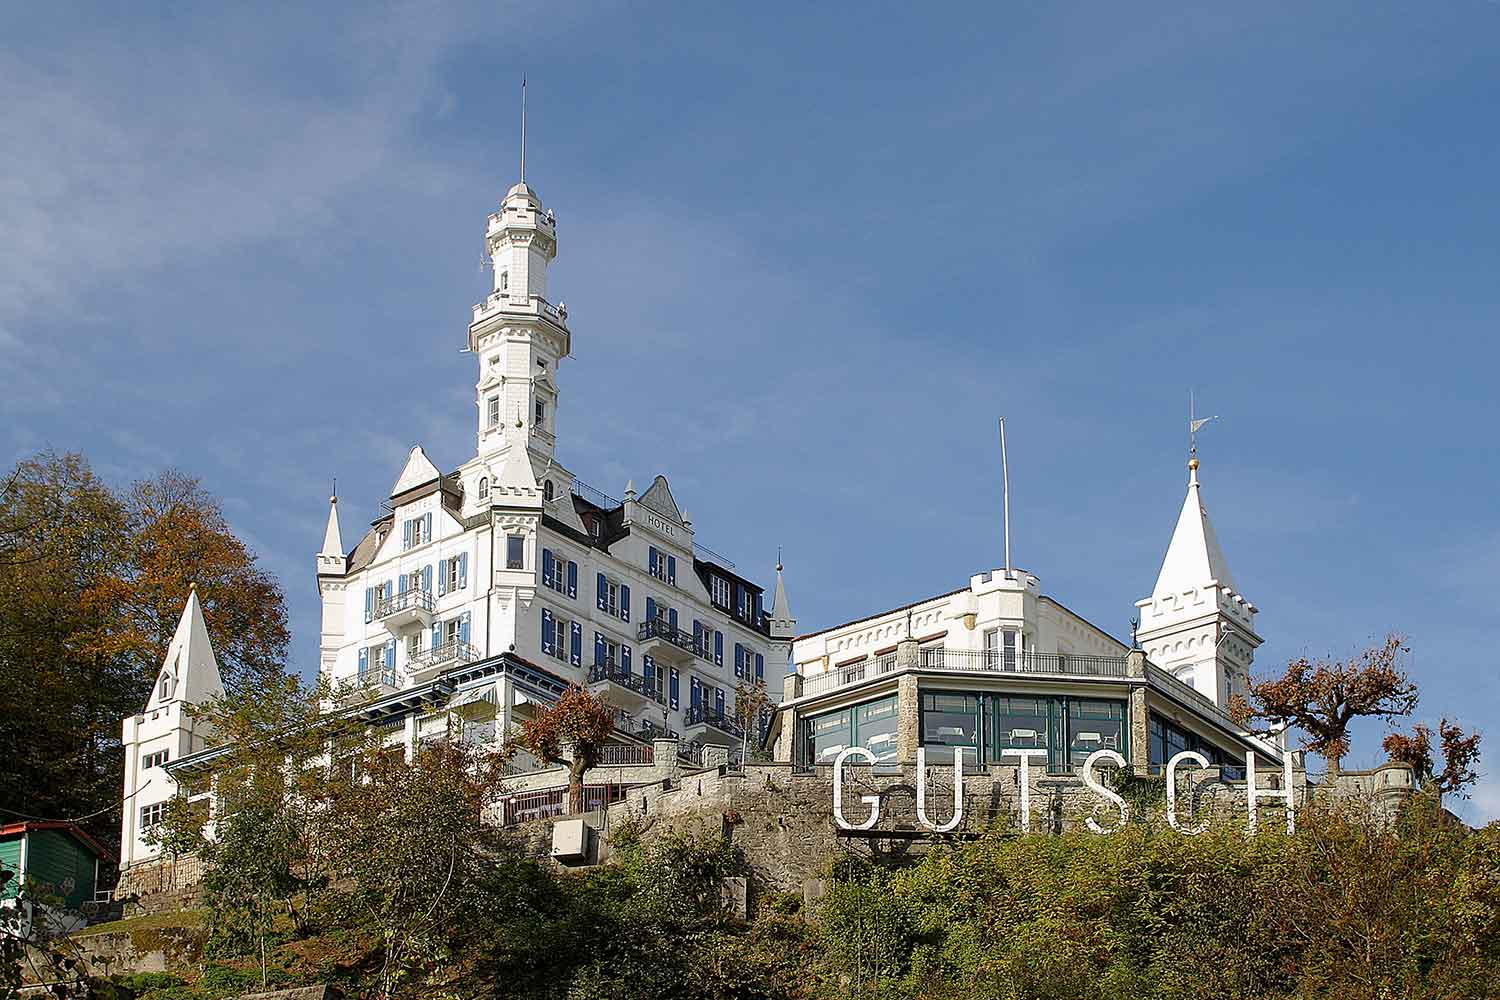 Hotel Gütsch Luzern